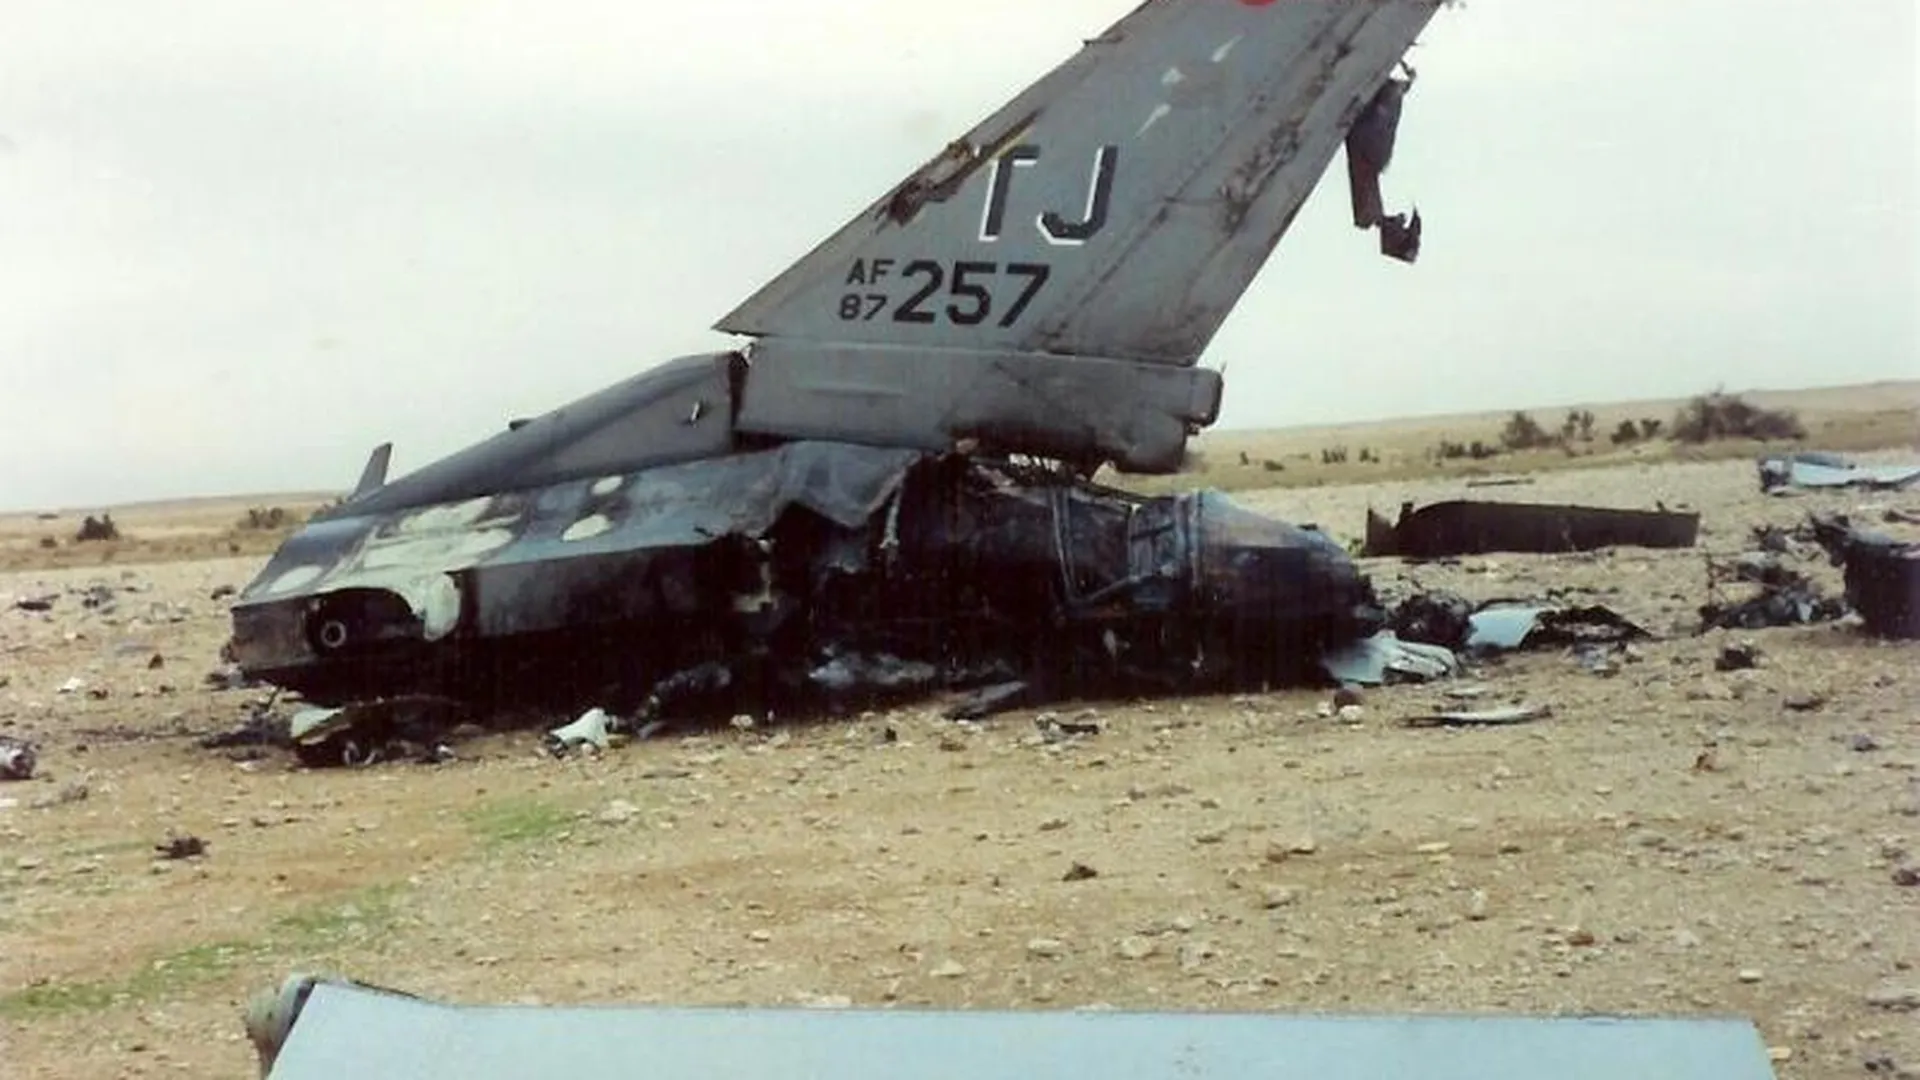 Обломки F-16, сбитого ЗРК С-125 во время операции «Буря в пустыне»